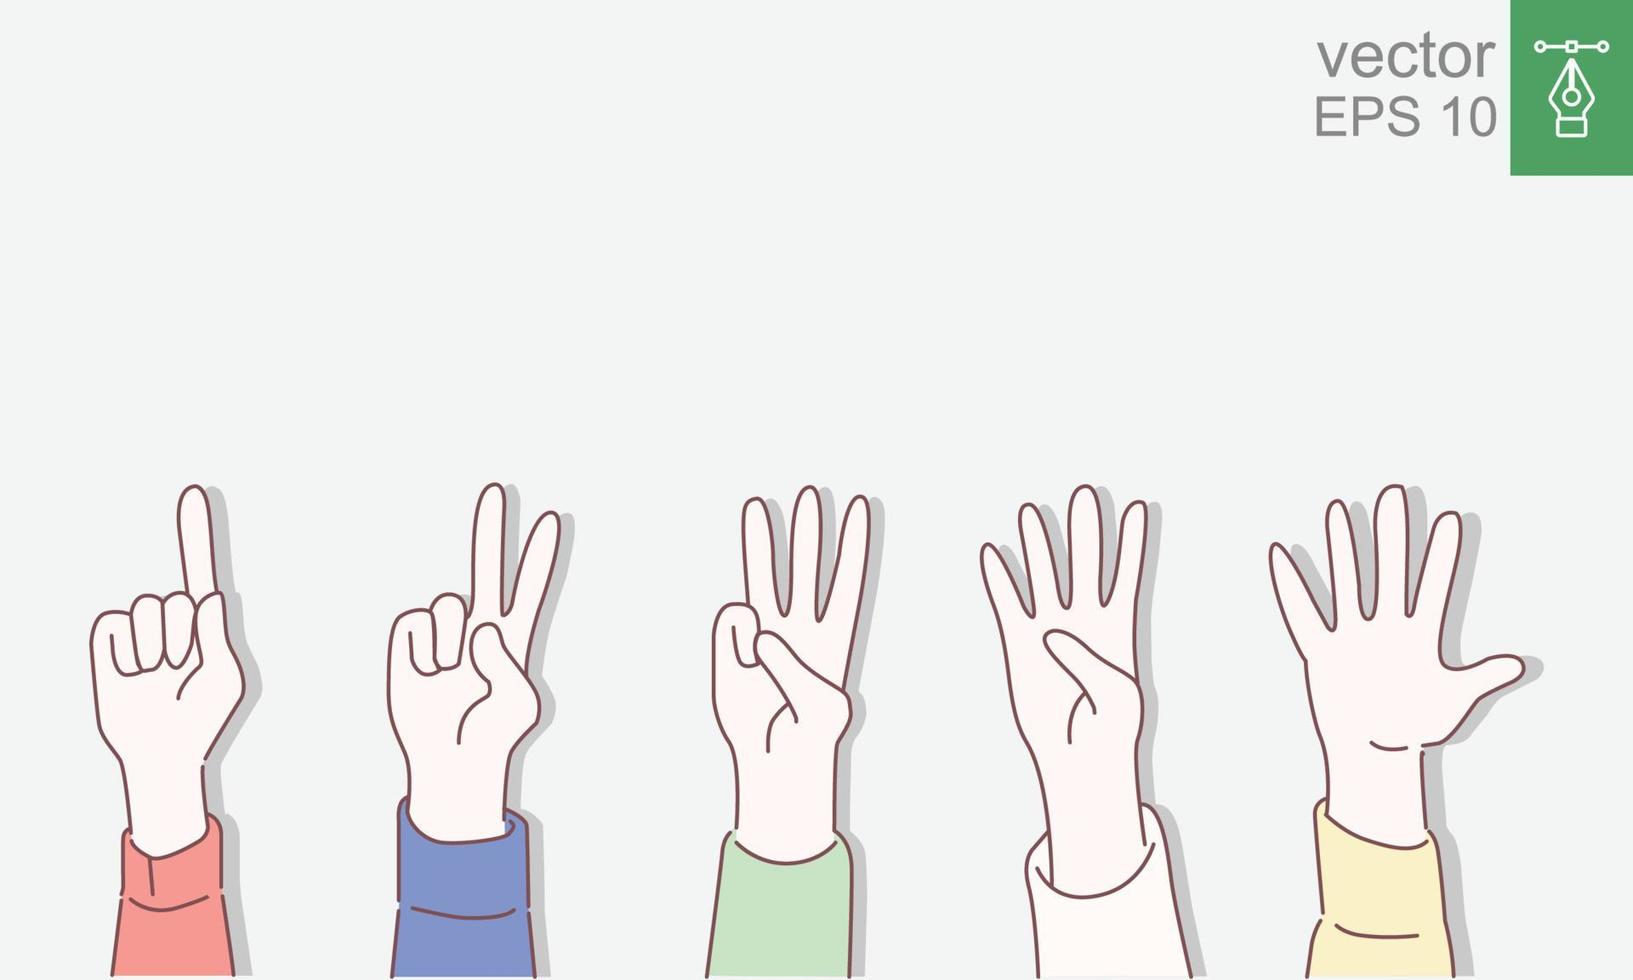 satz zum zählen von handzeichen von eins bis fünf. Kommunikationsgesten-Konzept. Vektorillustration lokalisiert auf flachem Design des bunten Hintergrundes mit Entwurf, dünne Linie. Folge 10. vektor